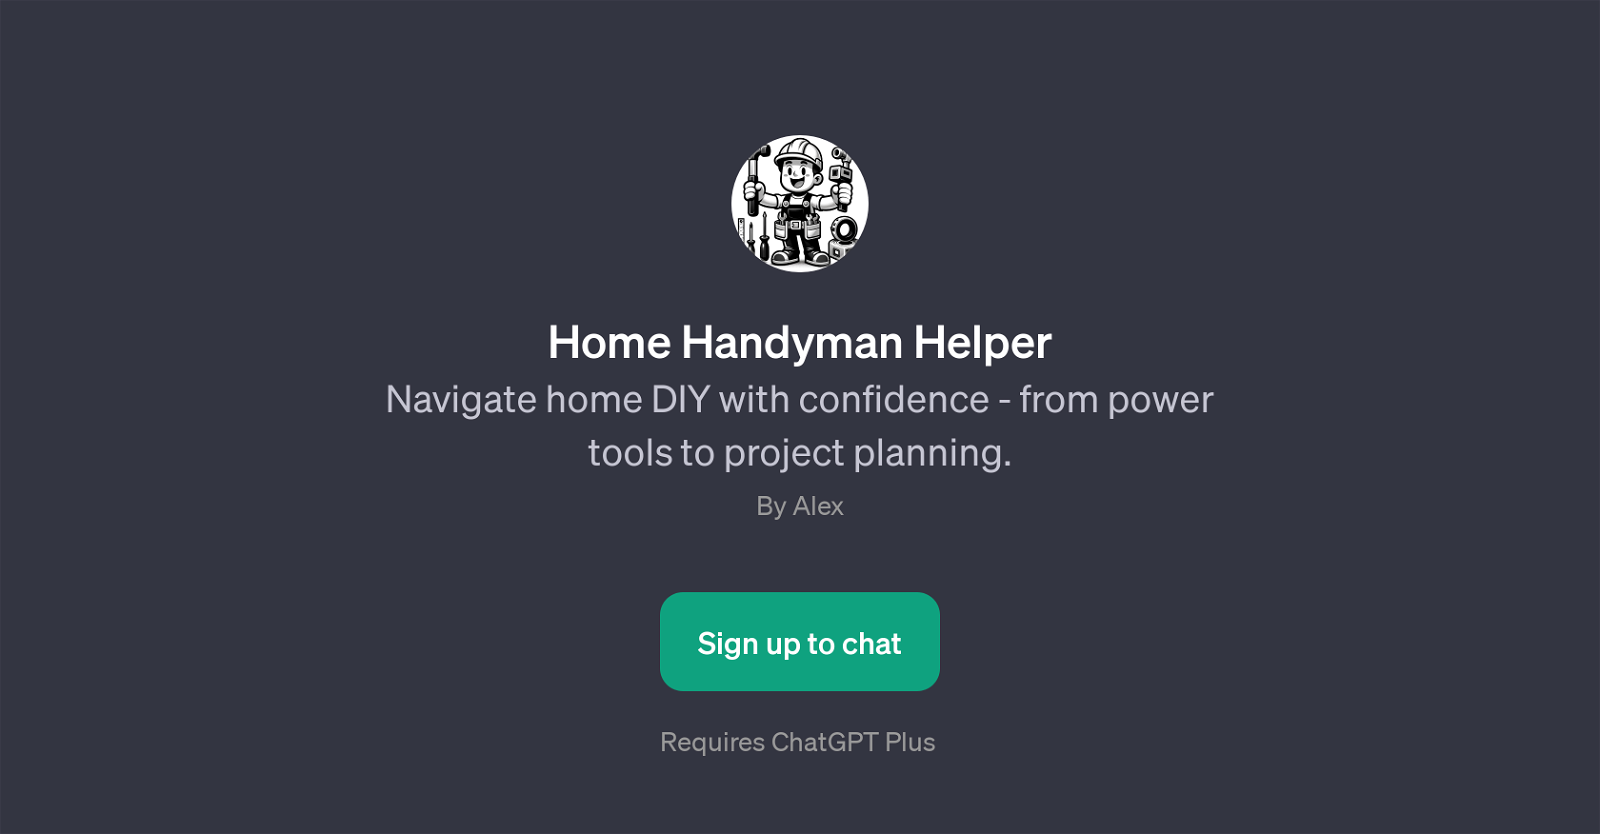 Home Handyman Helper website